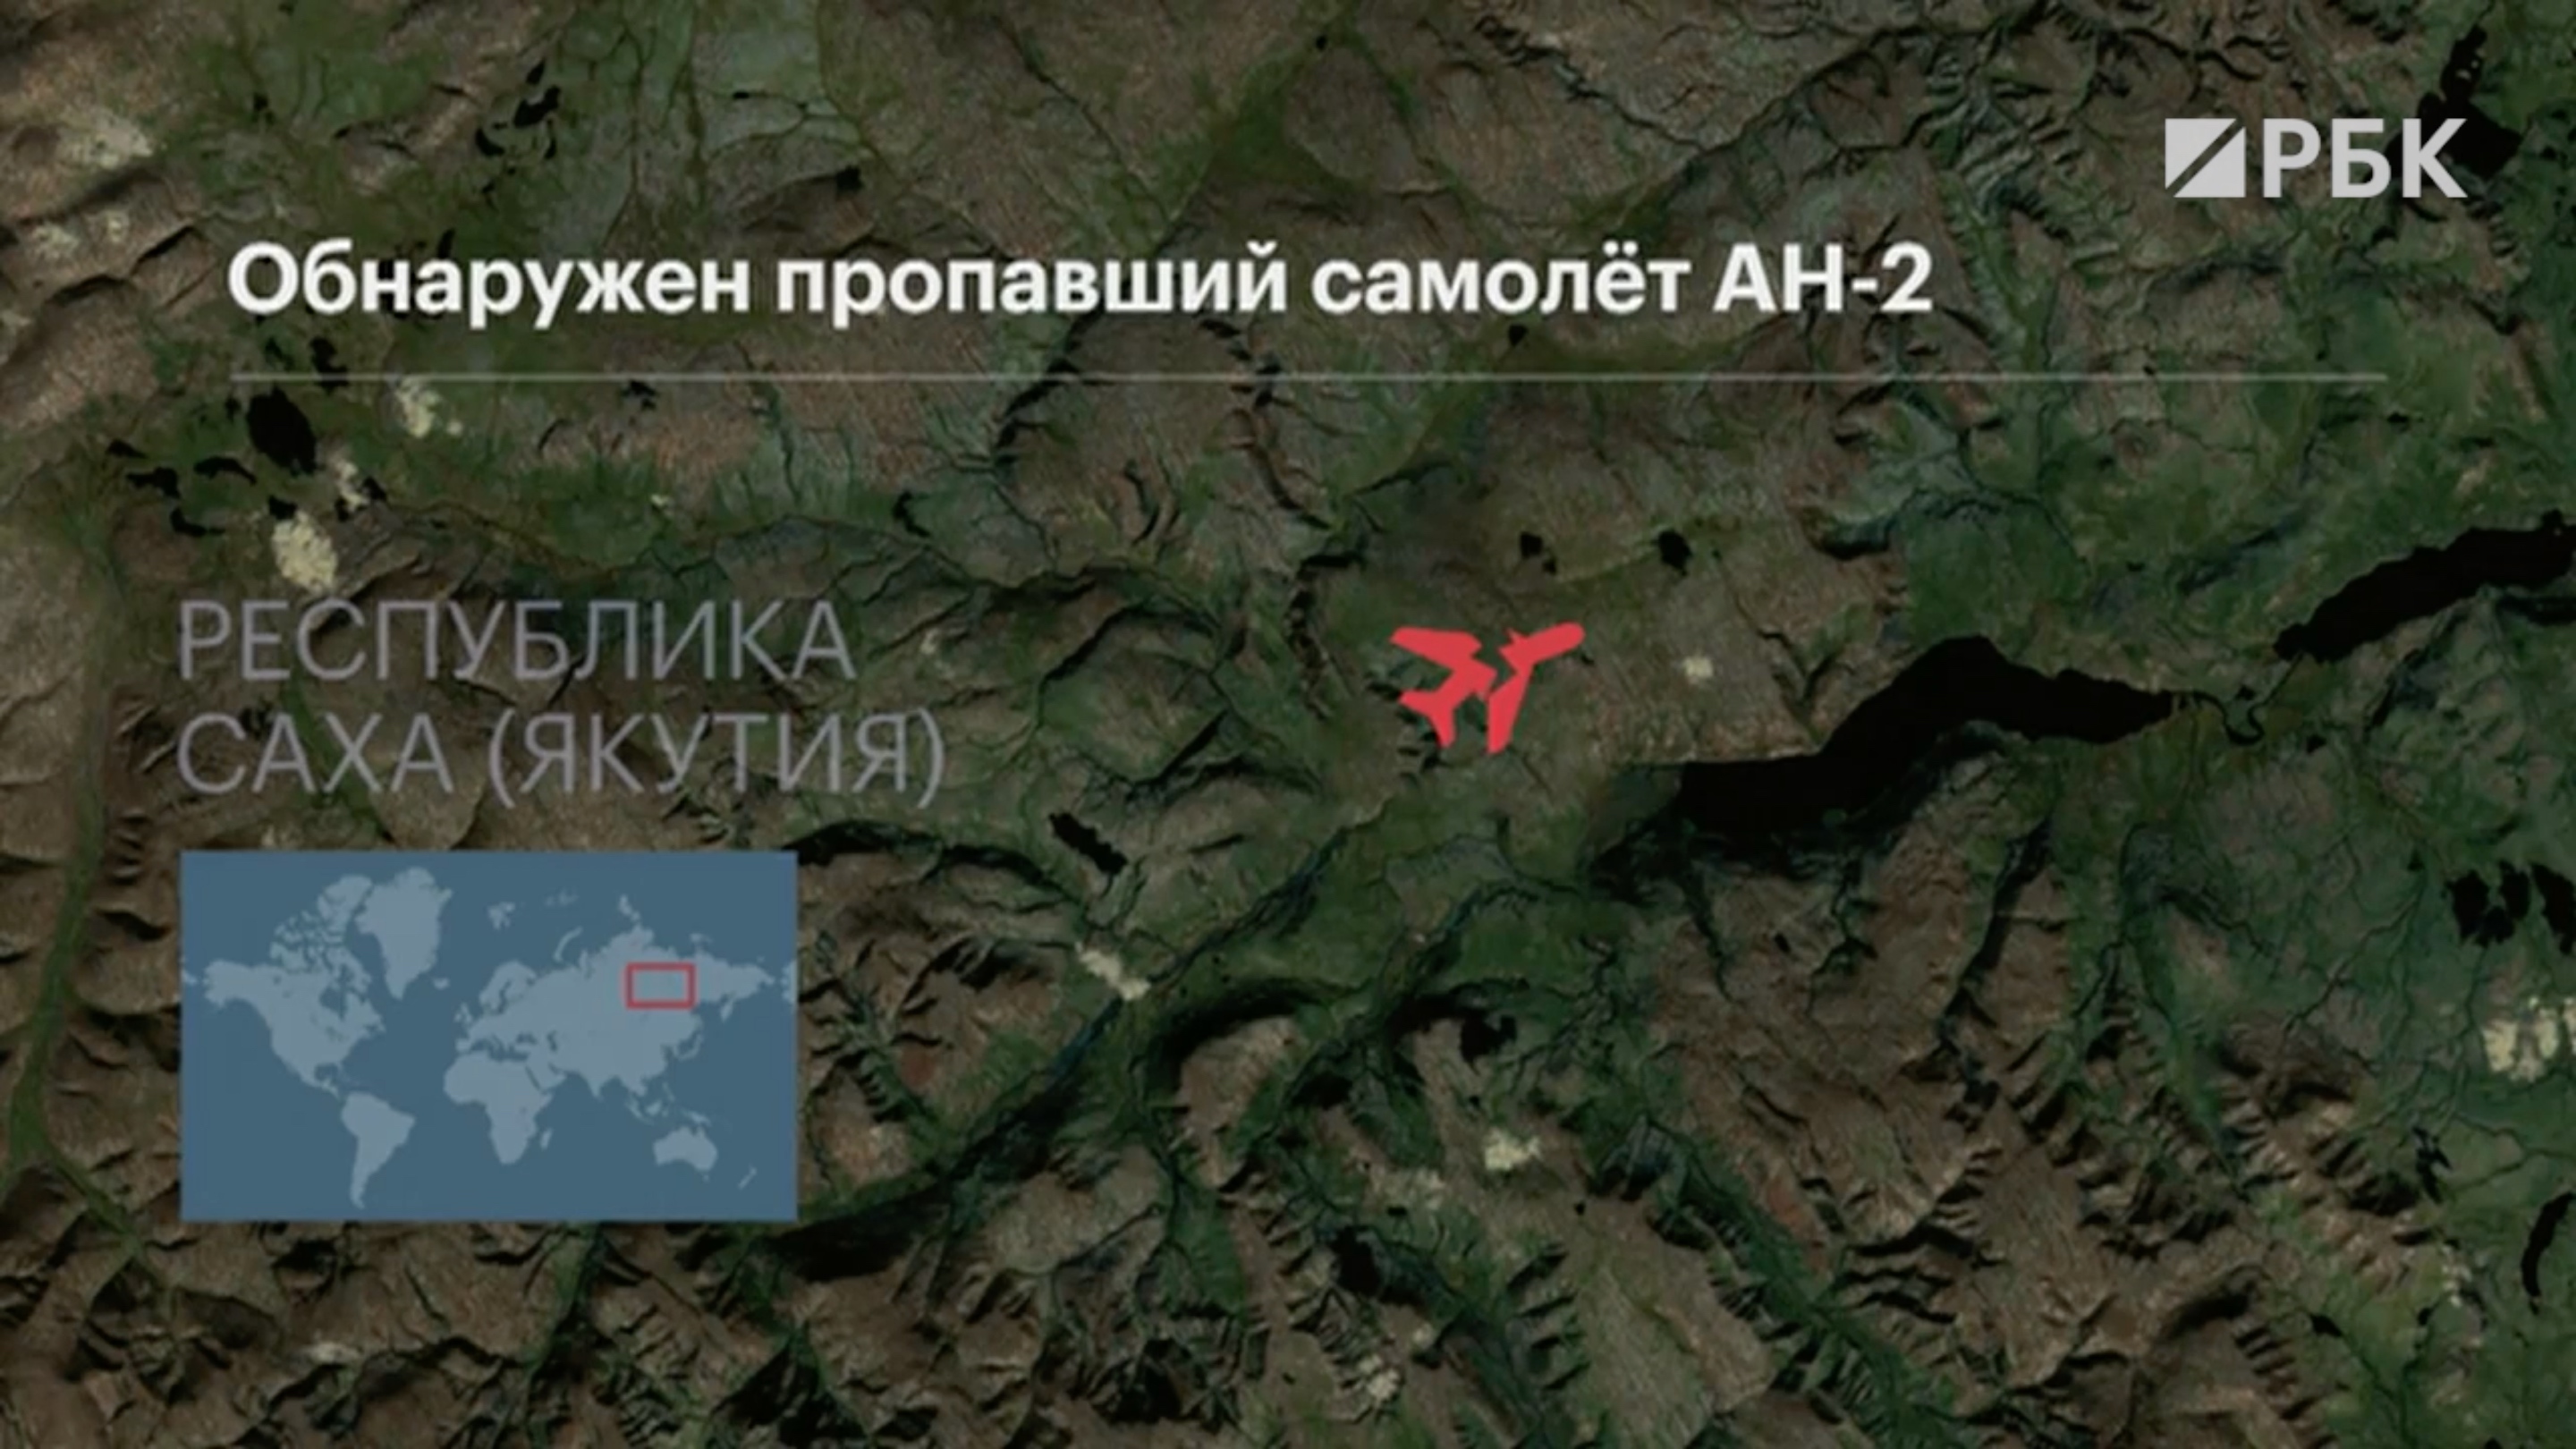 Спасатели нашли в Якутии пропавший 10 дней назад самолет Ан-2 и выжившего